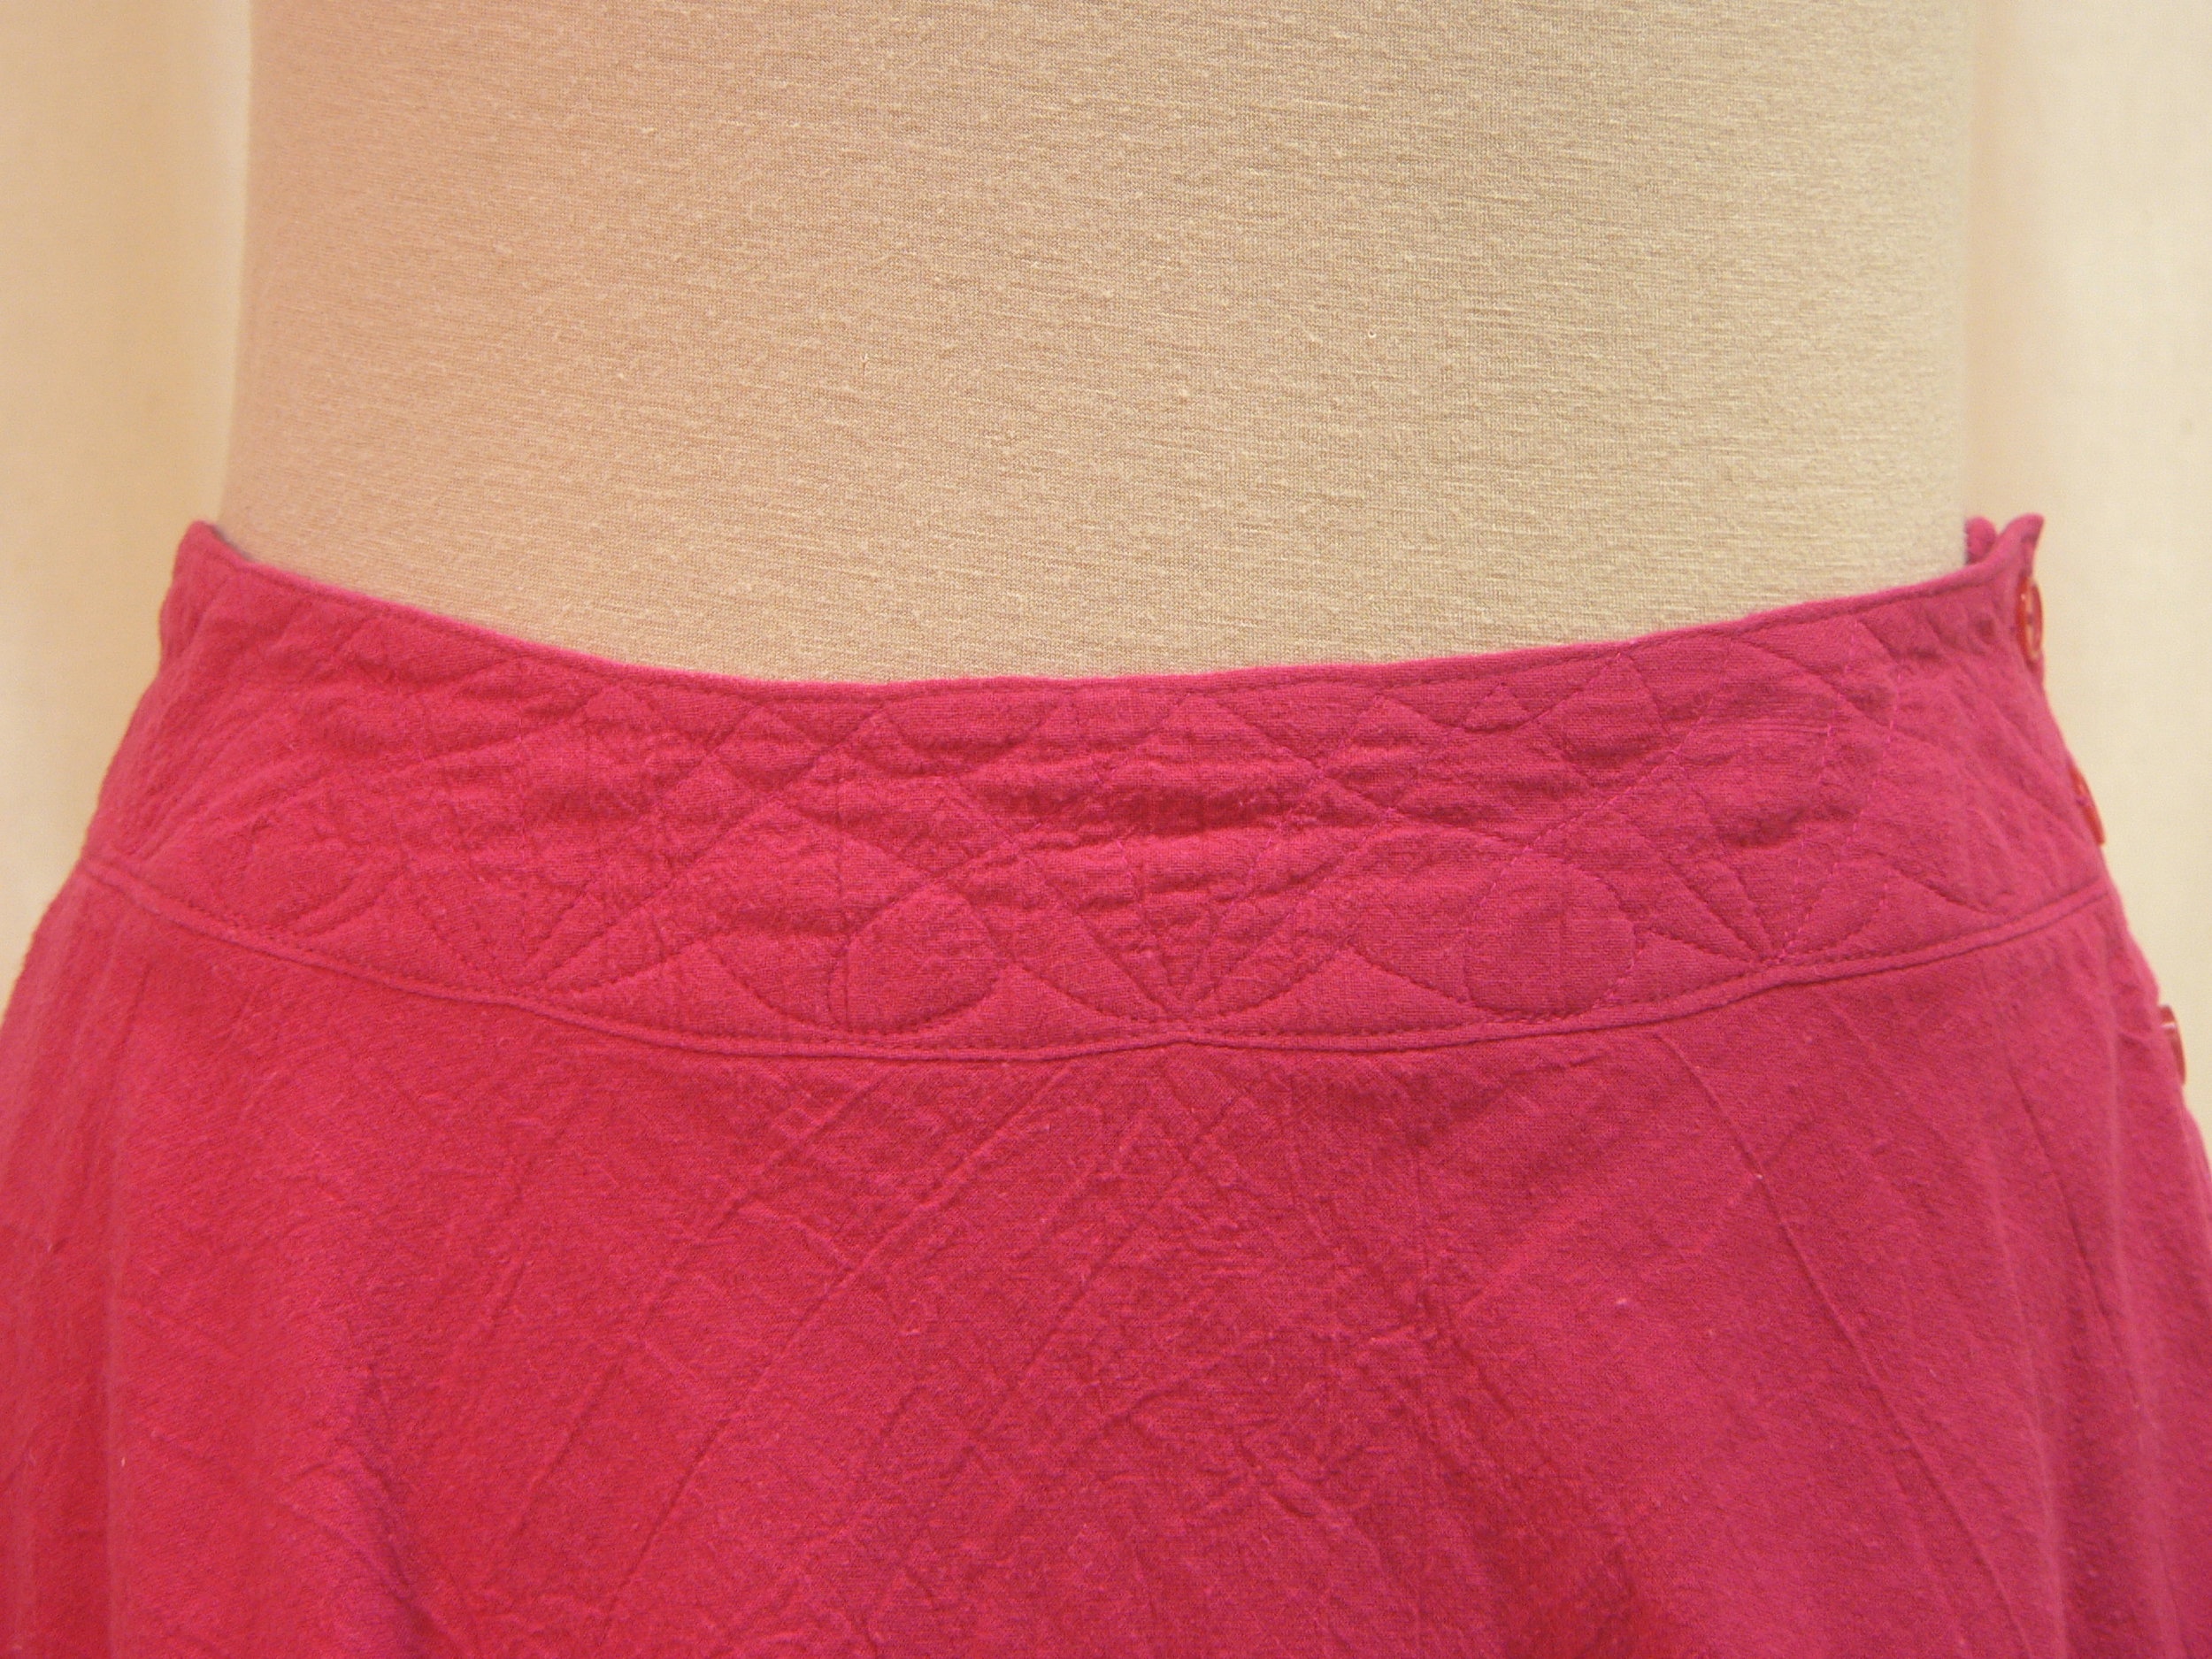 skirt09_detail_front.JPG